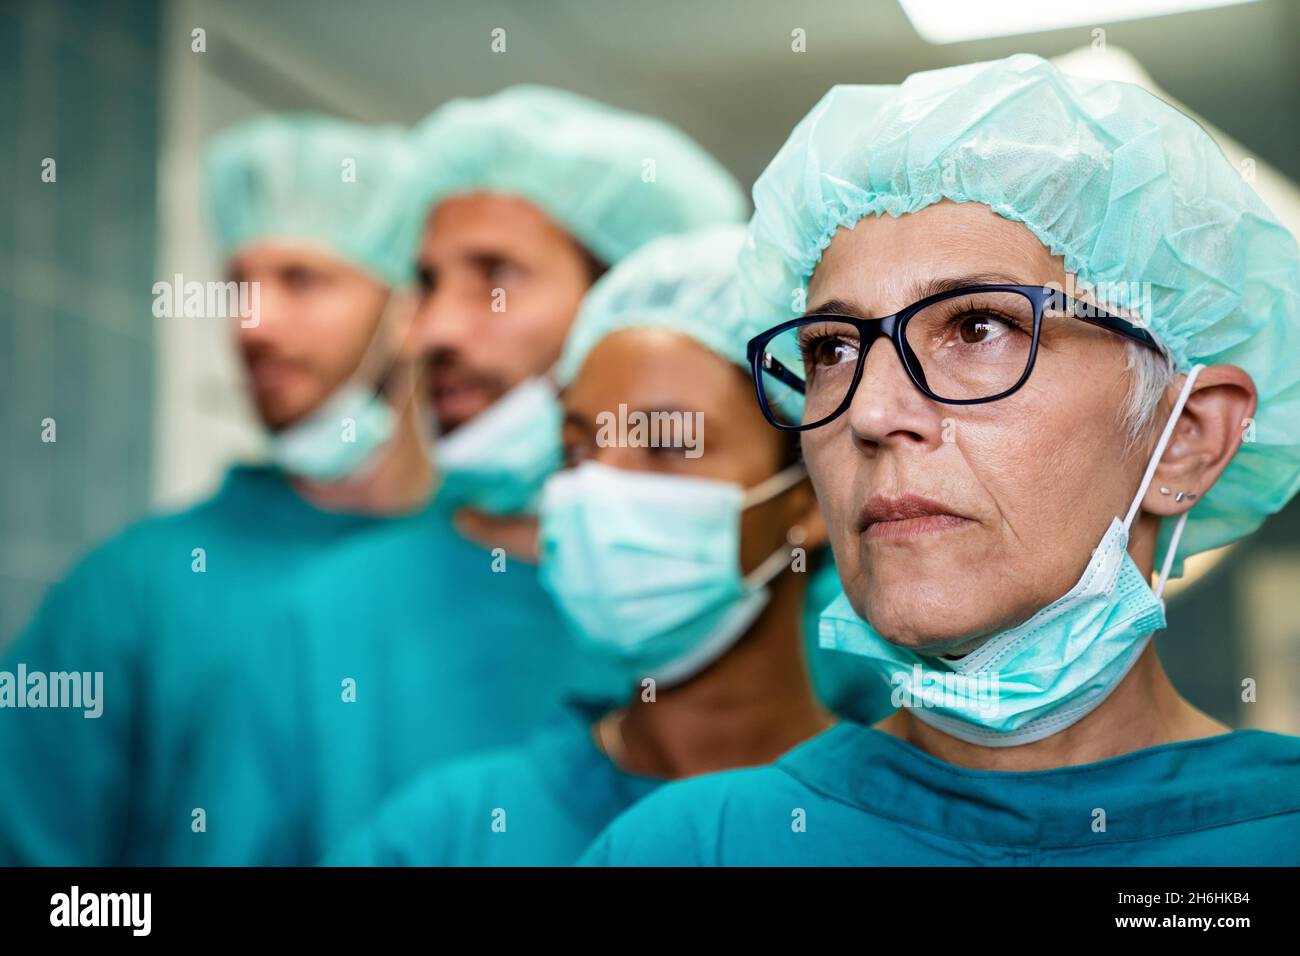 Operatori sanitari nella pandemia di Coronavirus Covid19 Foto Stock